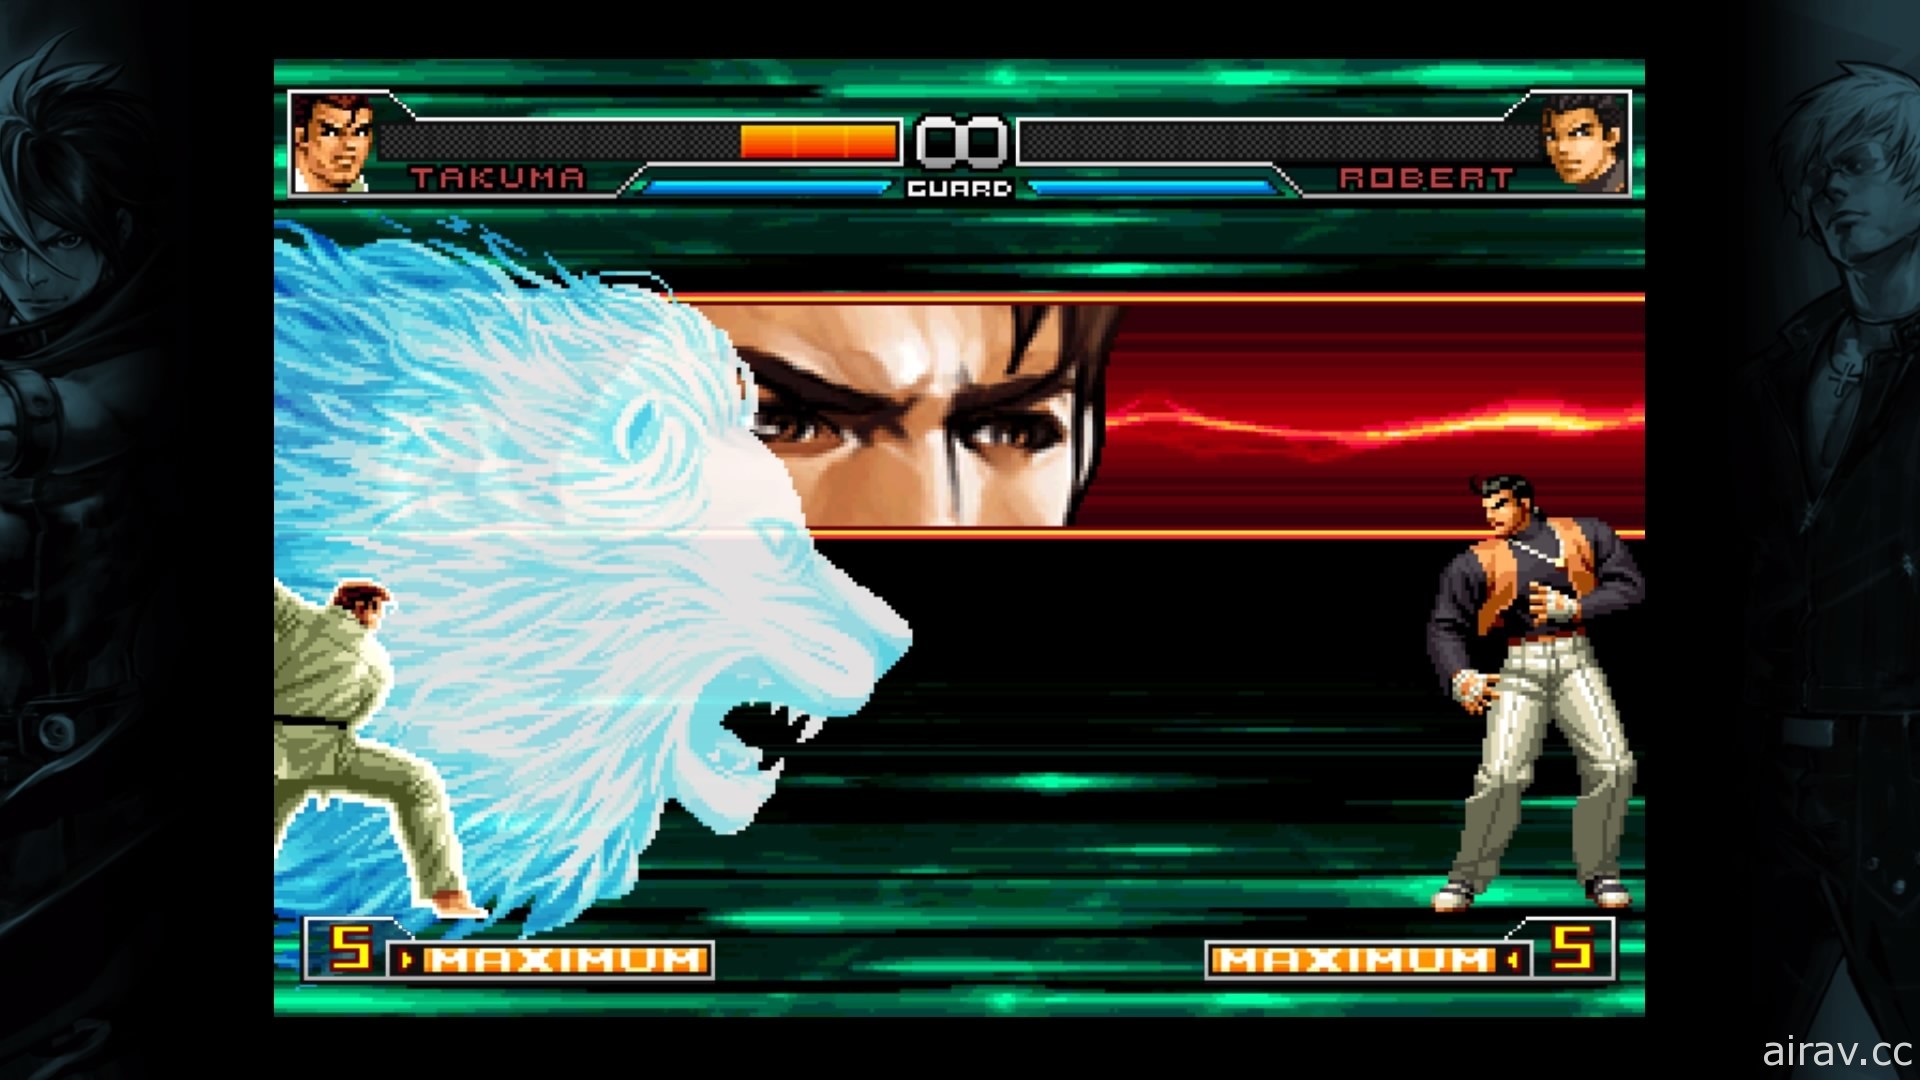 KOF 系列人氣作《拳皇 2002 無限對決》於 PS4 平台推出下載版